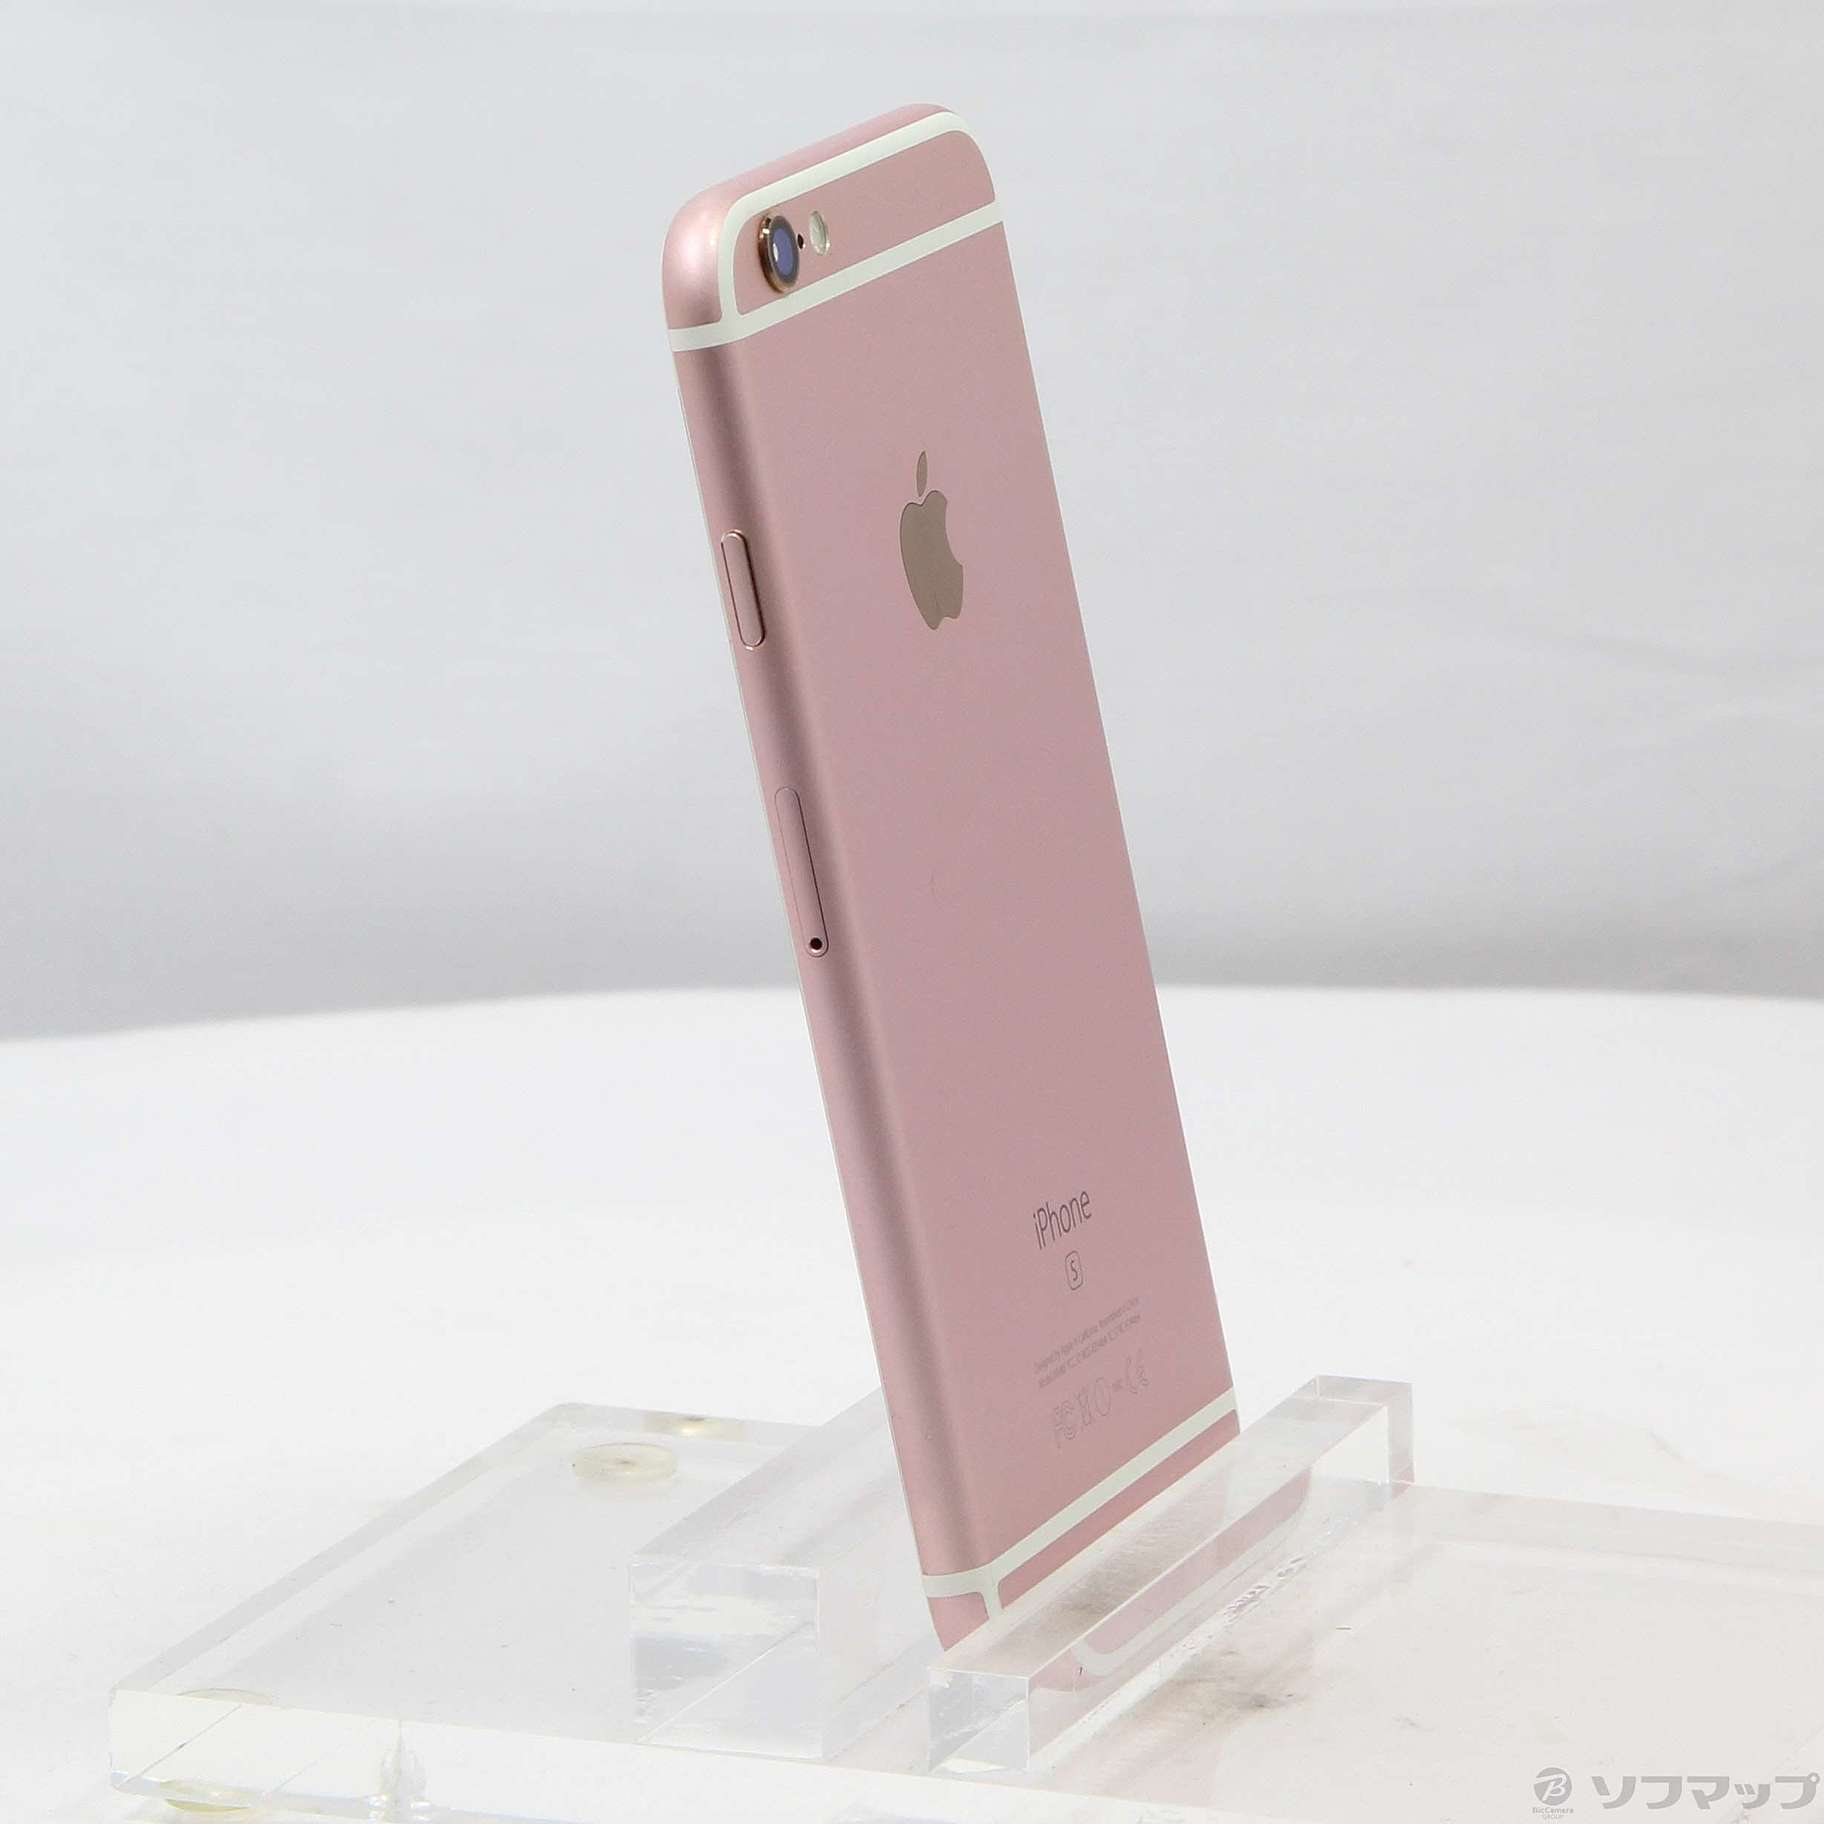 ドコモ Apple iPhone6s 128GB ゴールド MKQV2J/A